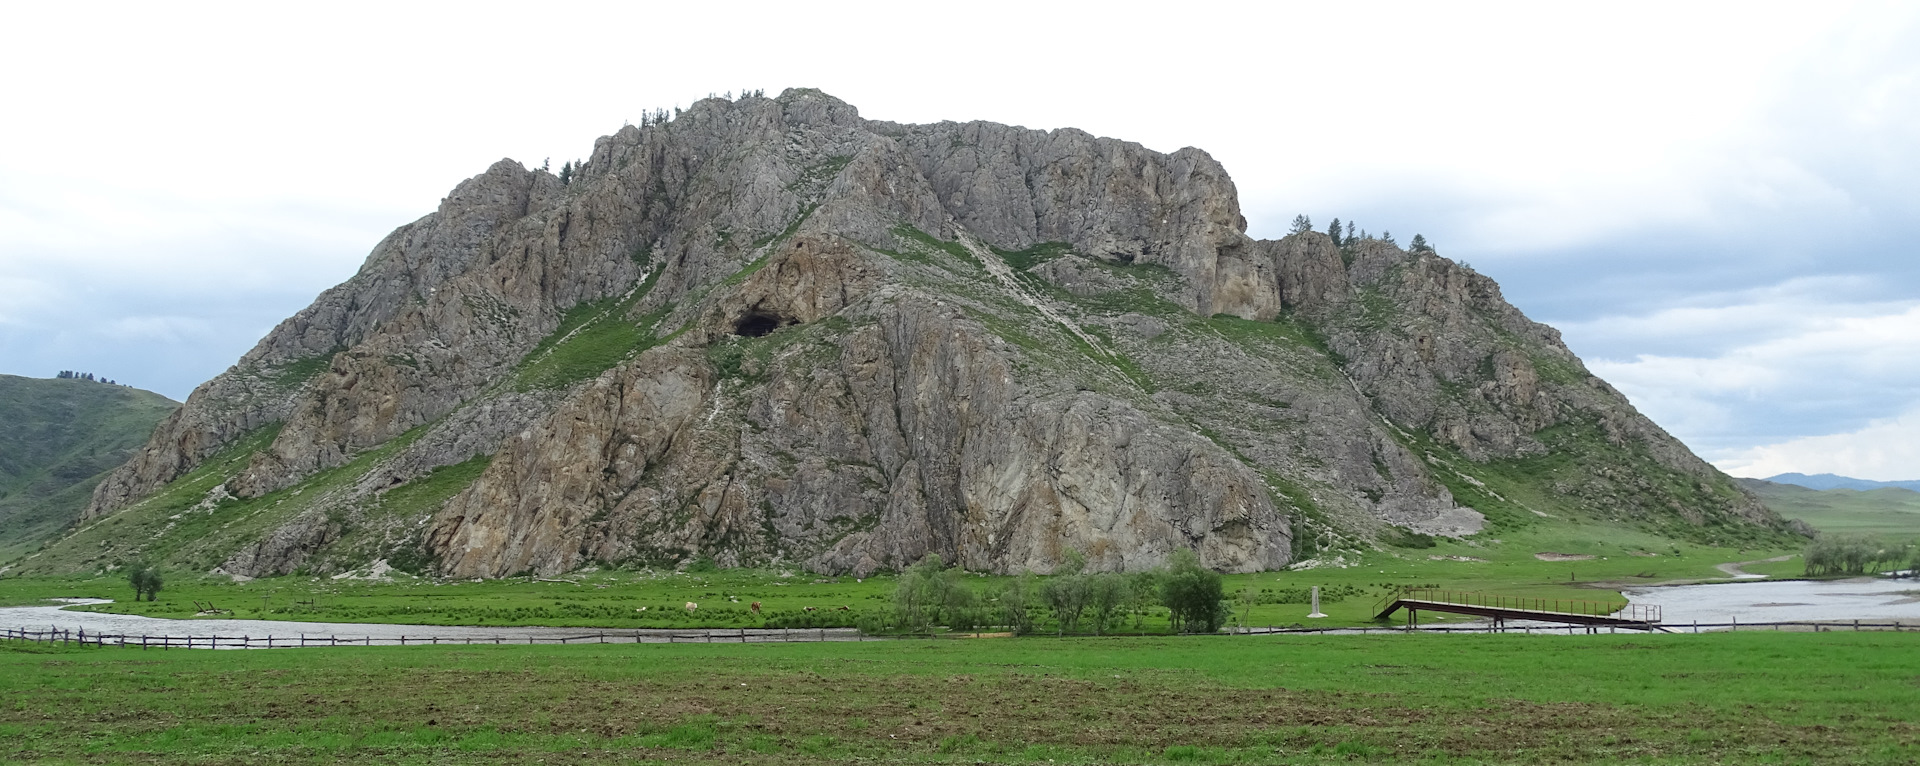 Усть-Канская пещера белый камень